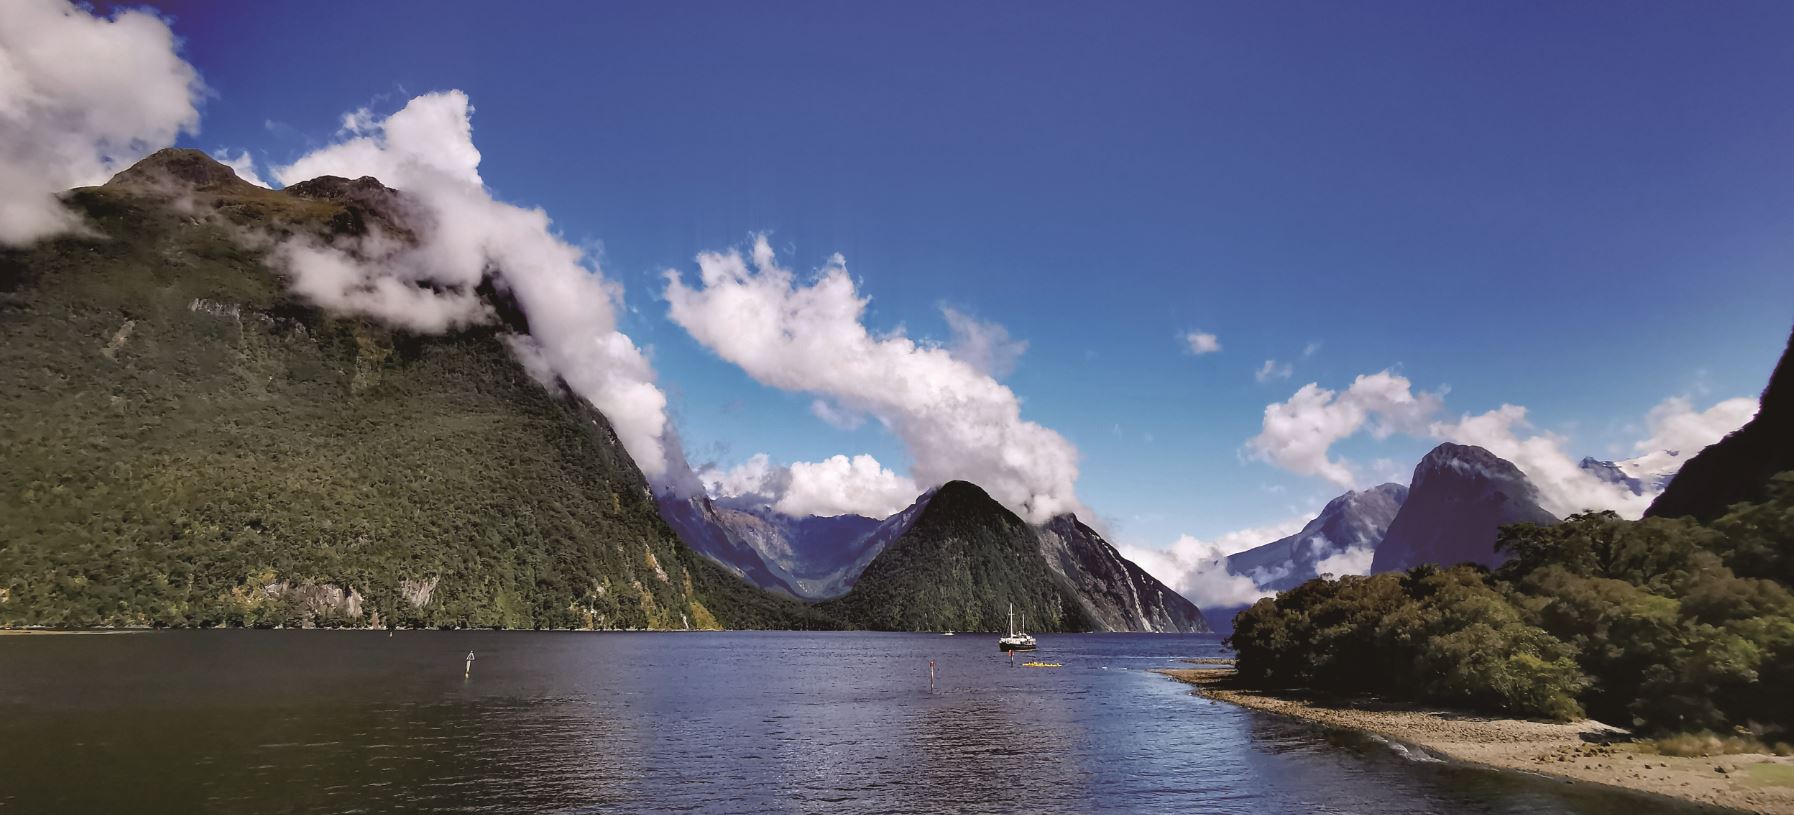 跟著深度旅行家馬繼康看世界遺產 | 紐西蘭─大自然的冰與火之歌 (上)